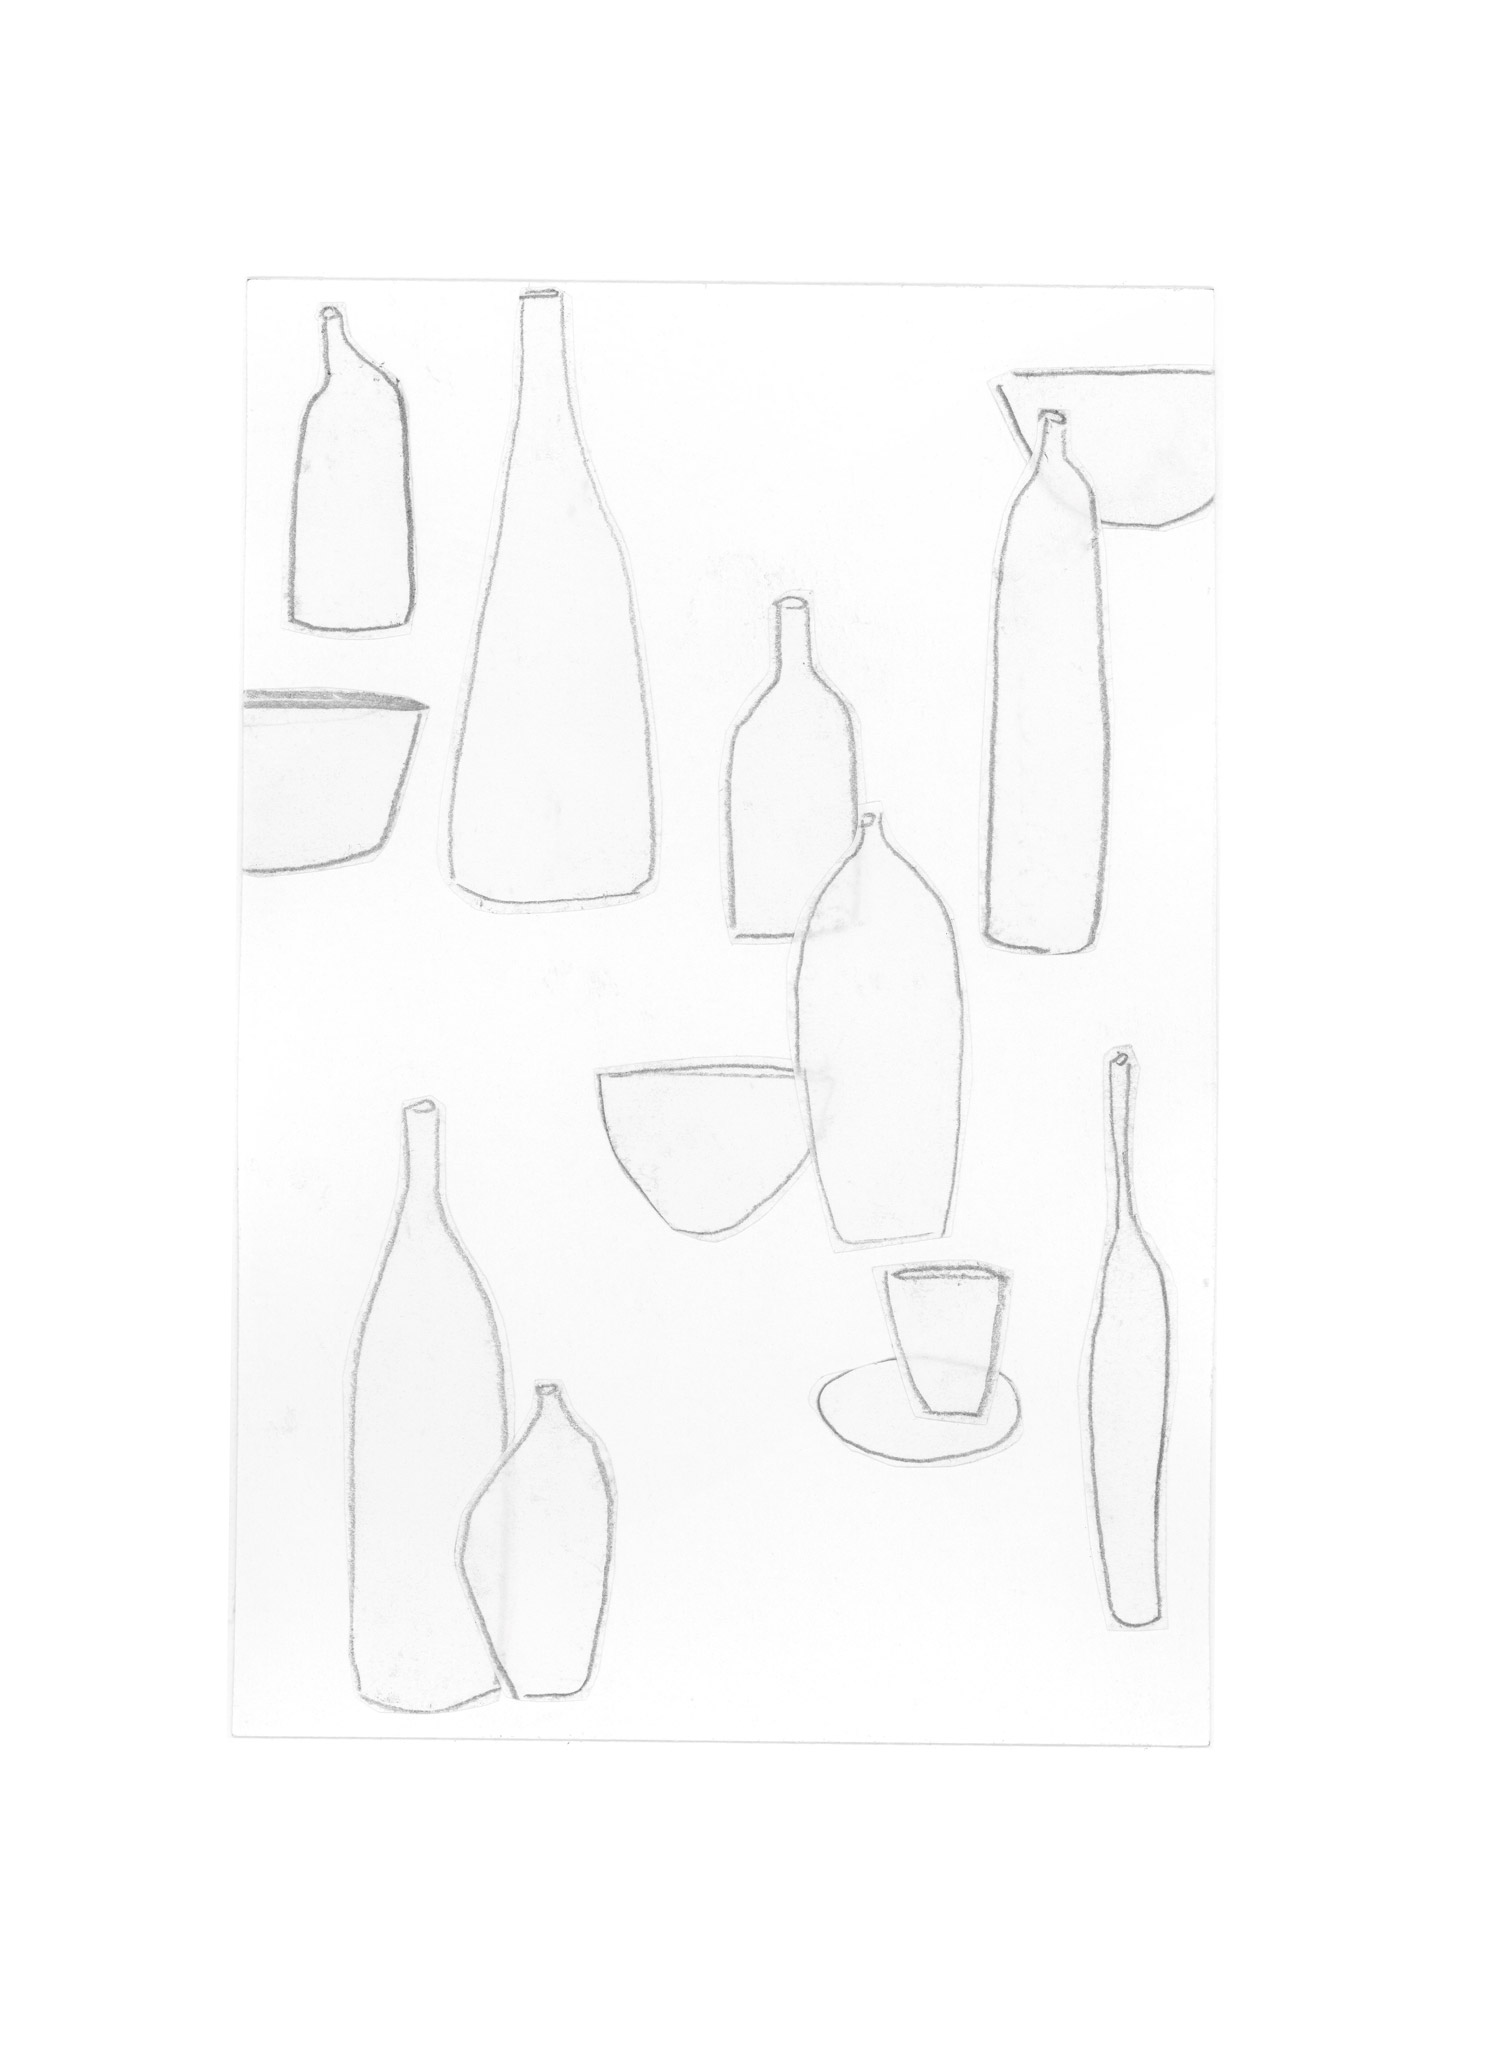 mediterranean bottles collage series, collage no. 4